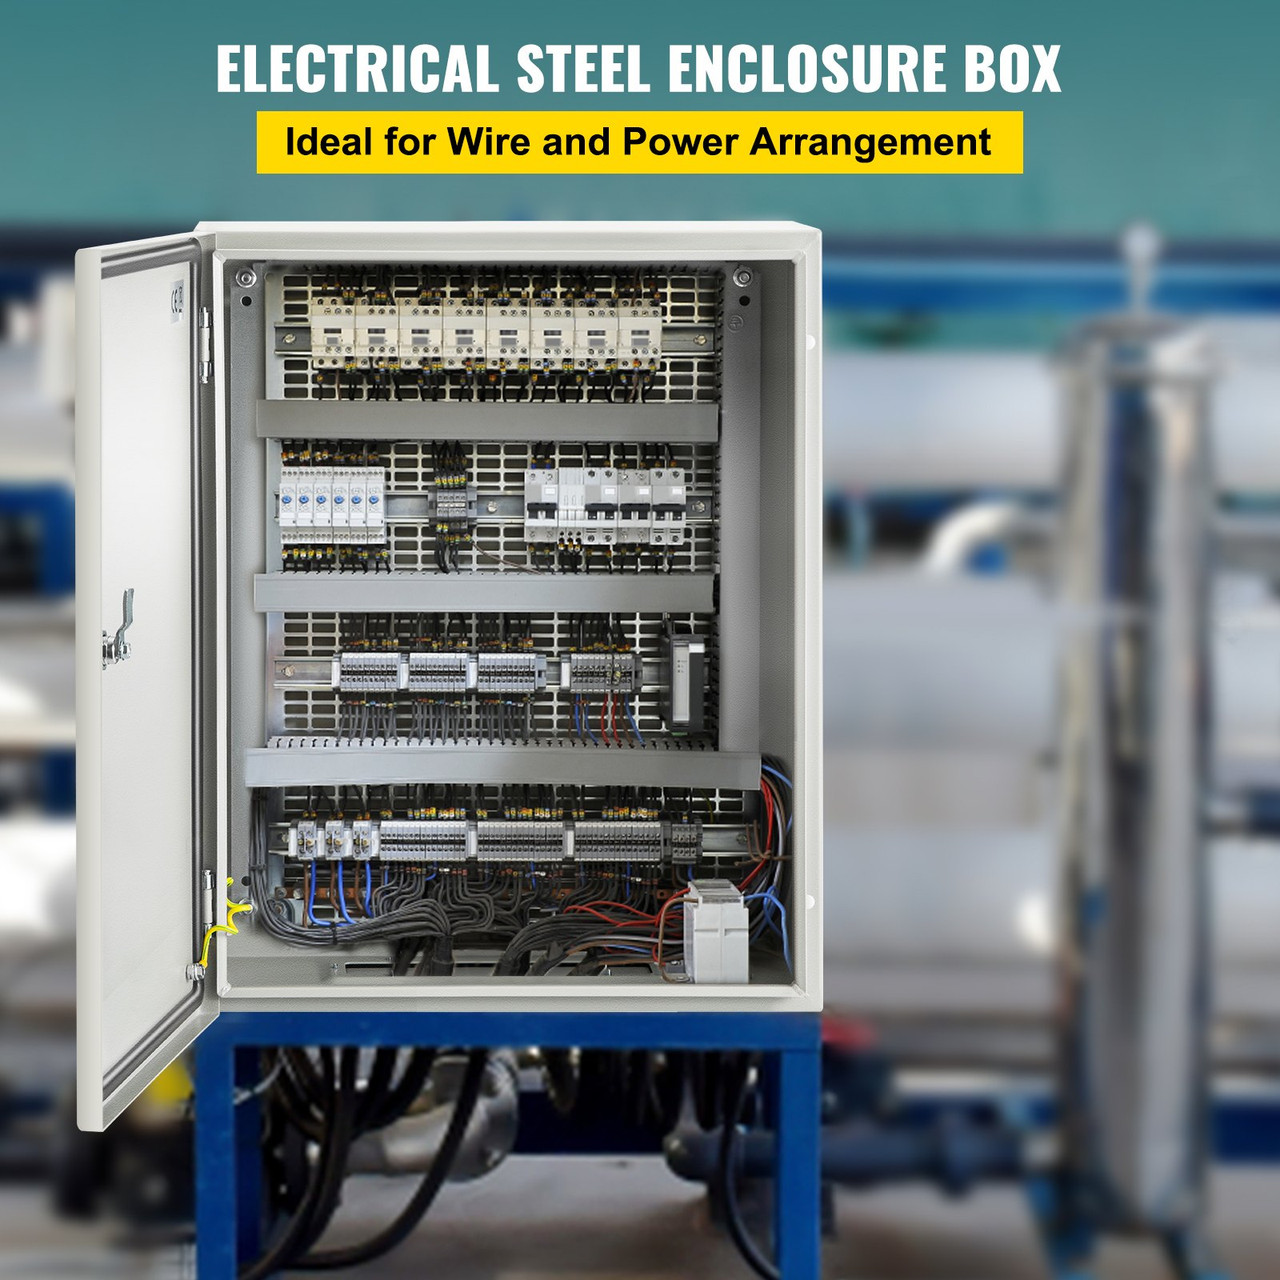 NEMA Steel Enclosure, 20 x 16 x 6'' NEMA 4X Steel Electrical Box, IP66 Waterproof & Dustproof, Outdoor/Indoor Electrical Junction Box, With Mounting Plate